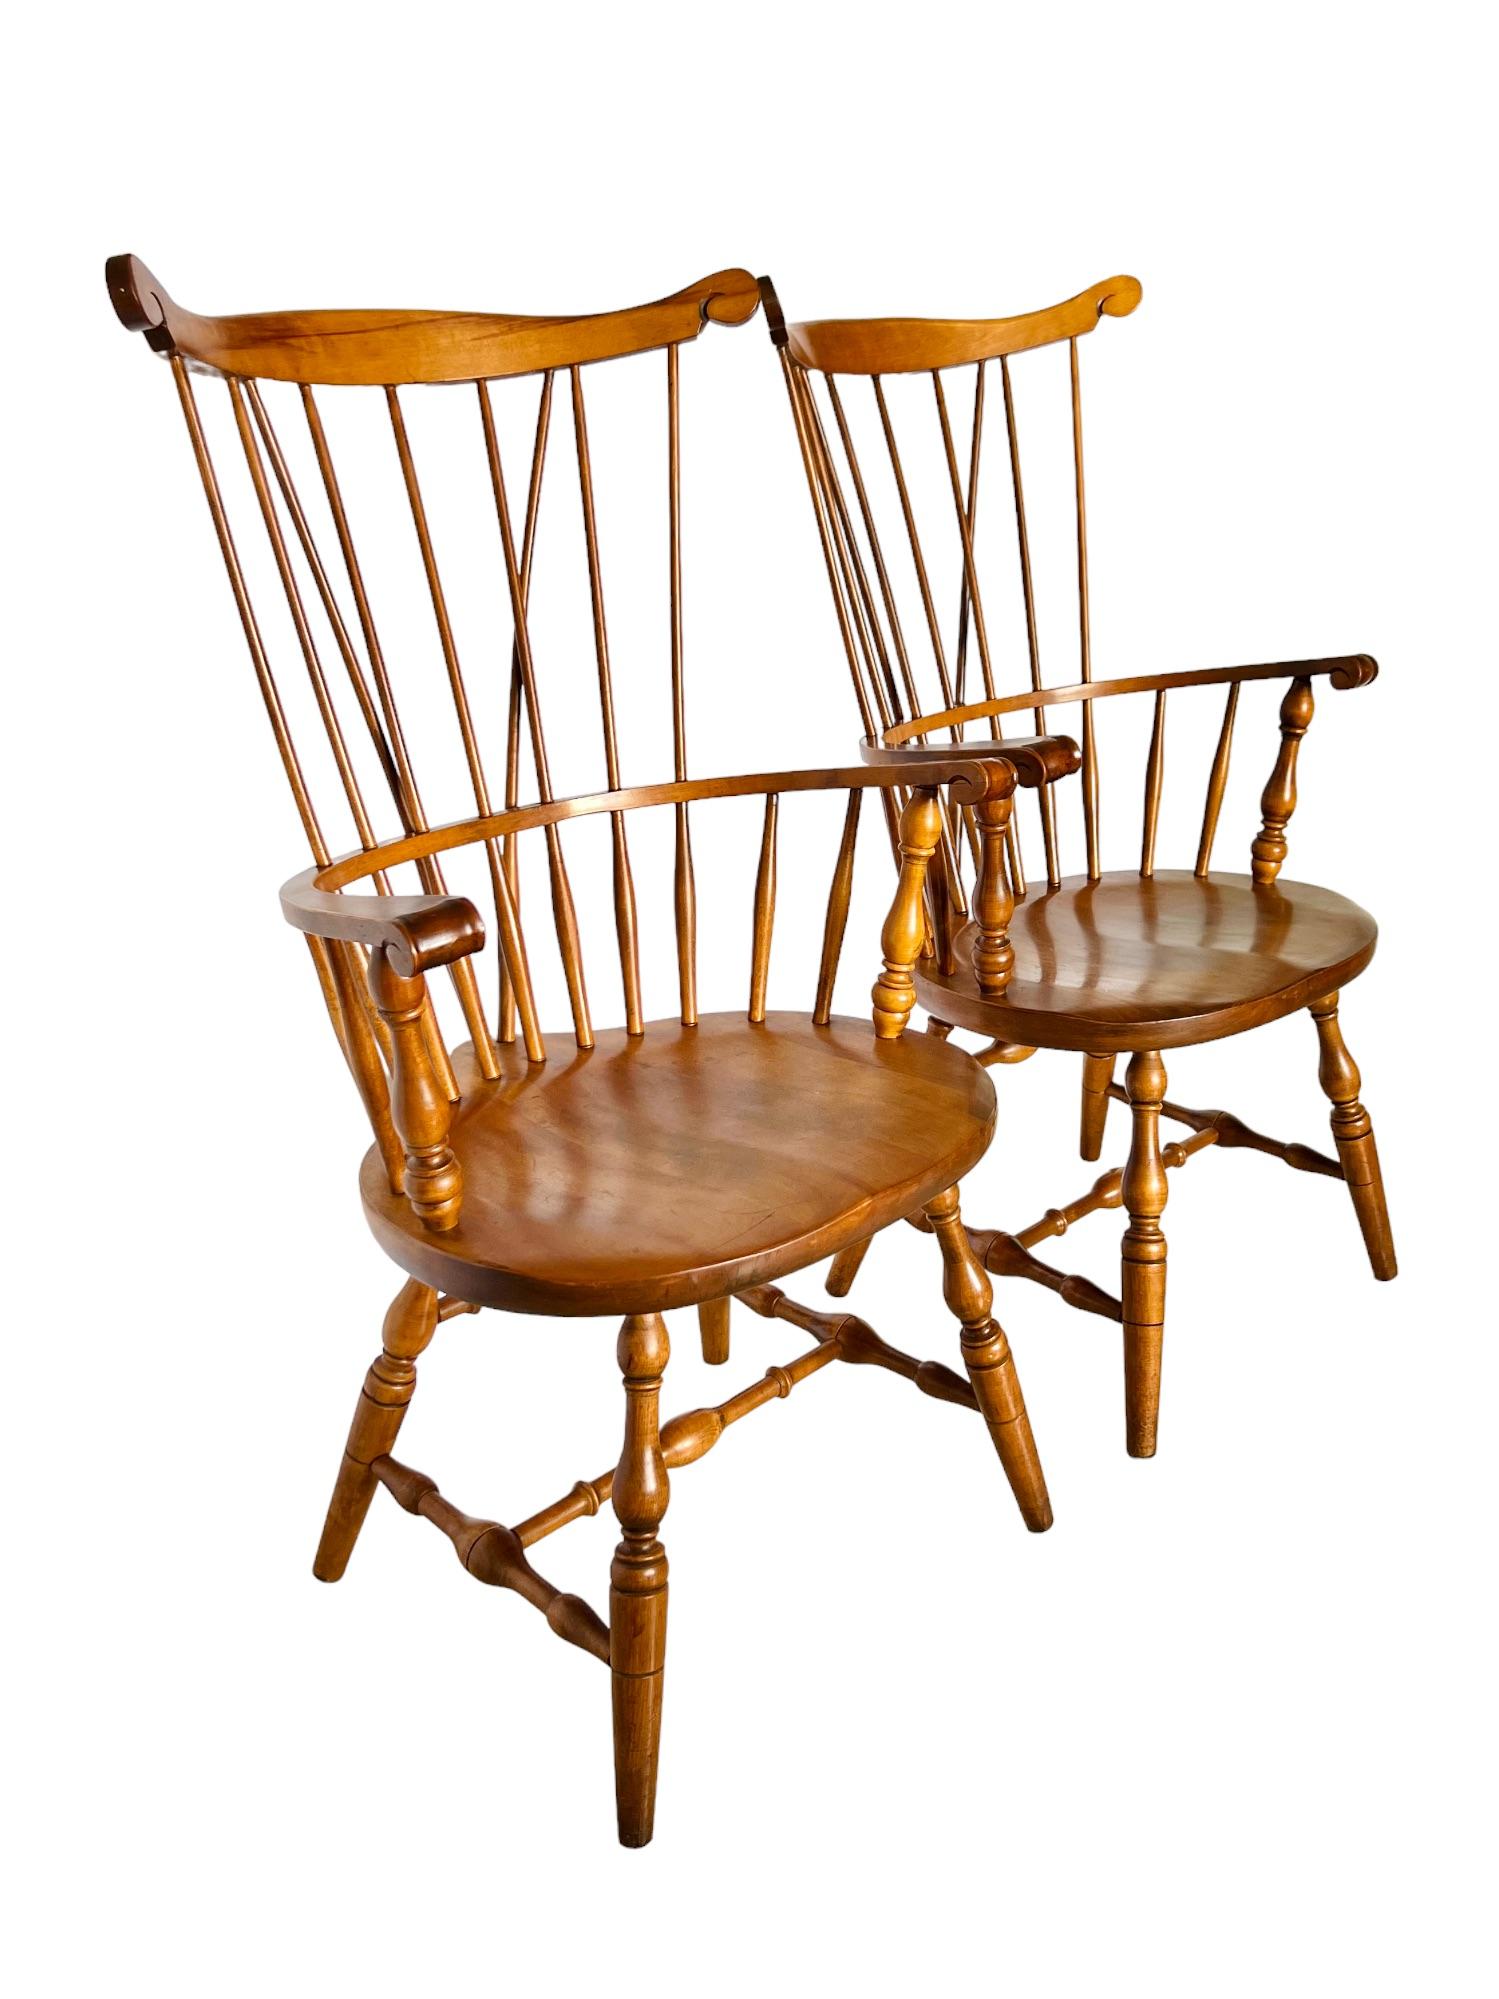 Paire de fauteuils Windsor en bois massif à dossier en peigne, fabriqués par S. Bent & Bros au début ou au milieu du 20e siècle. Exceptionnellement fabriqués à la main, entièrement en érable, ils présentent de hauts dossiers entretoisés, des sièges